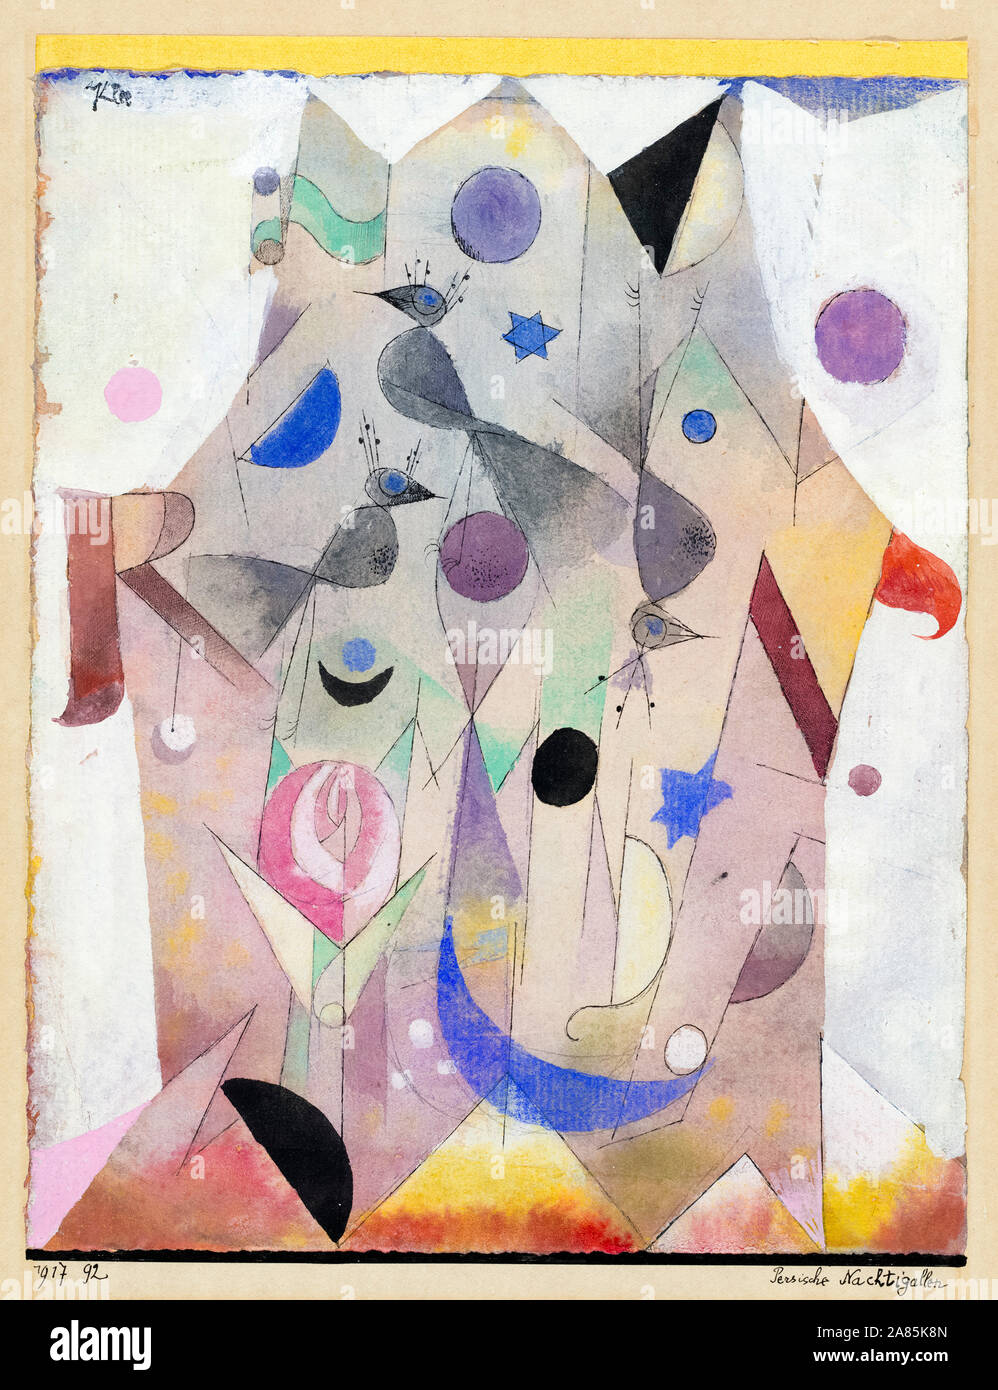 Paul Klee, la peinture abstraite, Persische Nachtigallen (Persan Nightingales), 1917 Banque D'Images